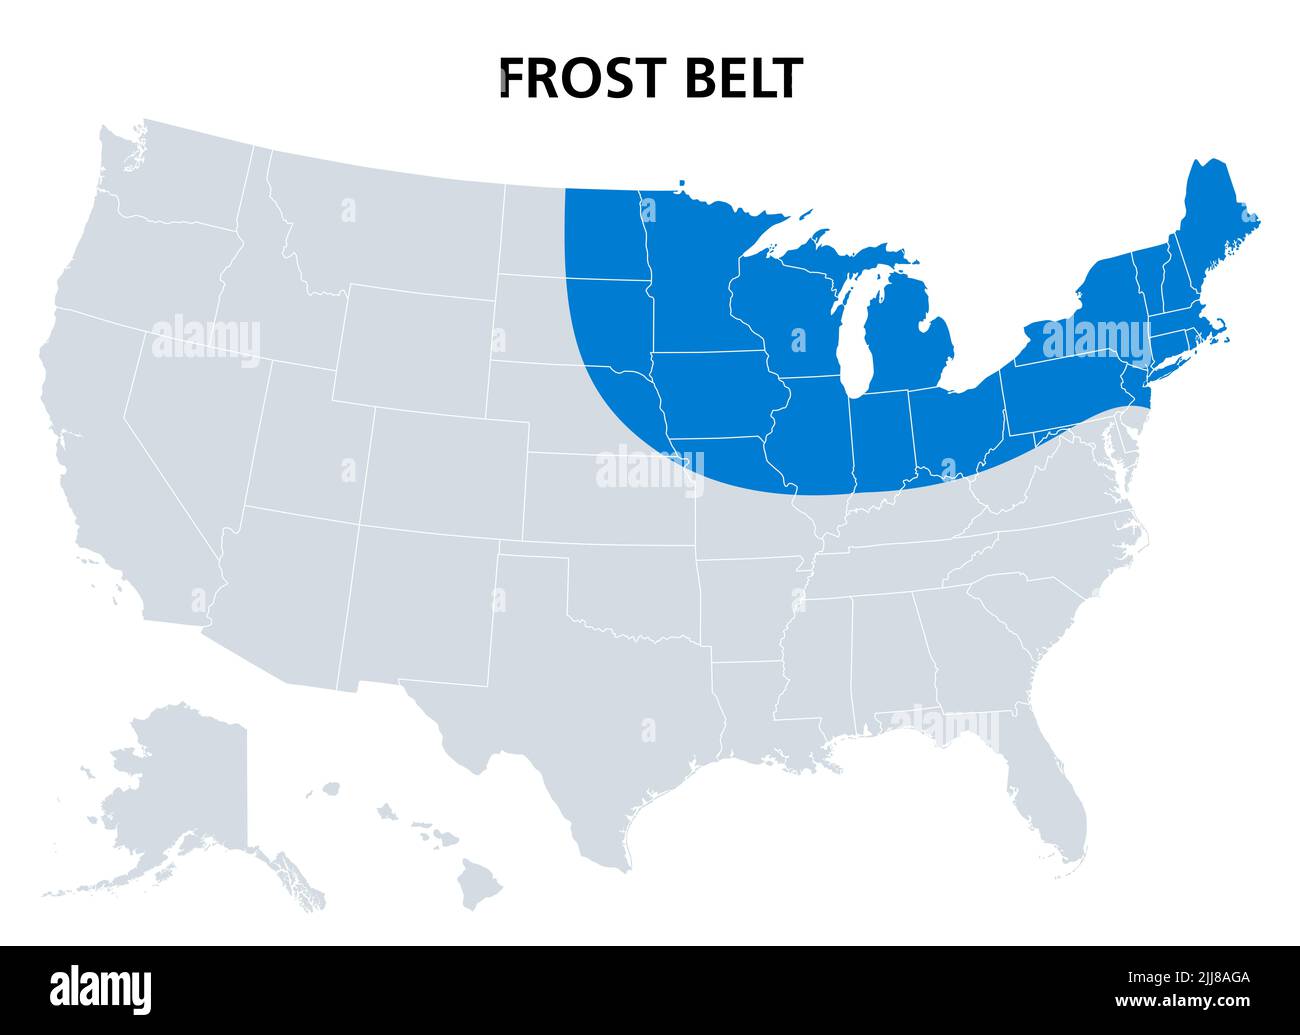 Cinturón de las heladas de los Estados Unidos, mapa político. Región en el noreste, incluyendo la región de los Grandes Lagos y parte del Medio Oeste Superior. Foto de stock